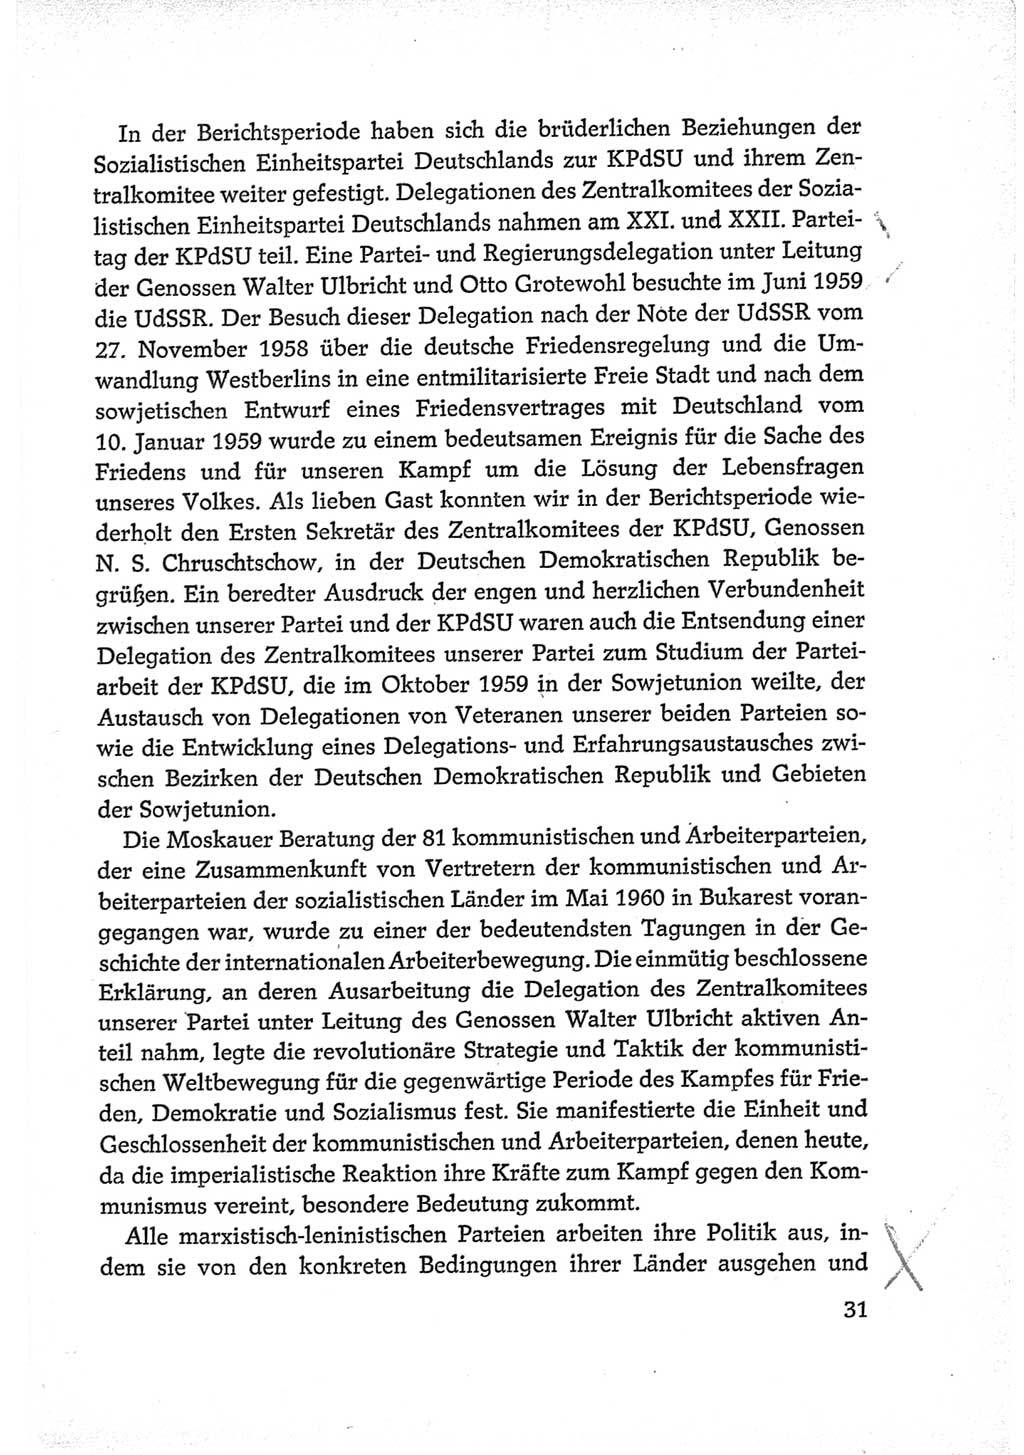 Protokoll der Verhandlungen des Ⅵ. Parteitages der Sozialistischen Einheitspartei Deutschlands (SED) [Deutsche Demokratische Republik (DDR)] 1963, Band Ⅳ, Seite 31 (Prot. Verh. Ⅵ. PT SED DDR 1963, Bd. Ⅳ, S. 31)